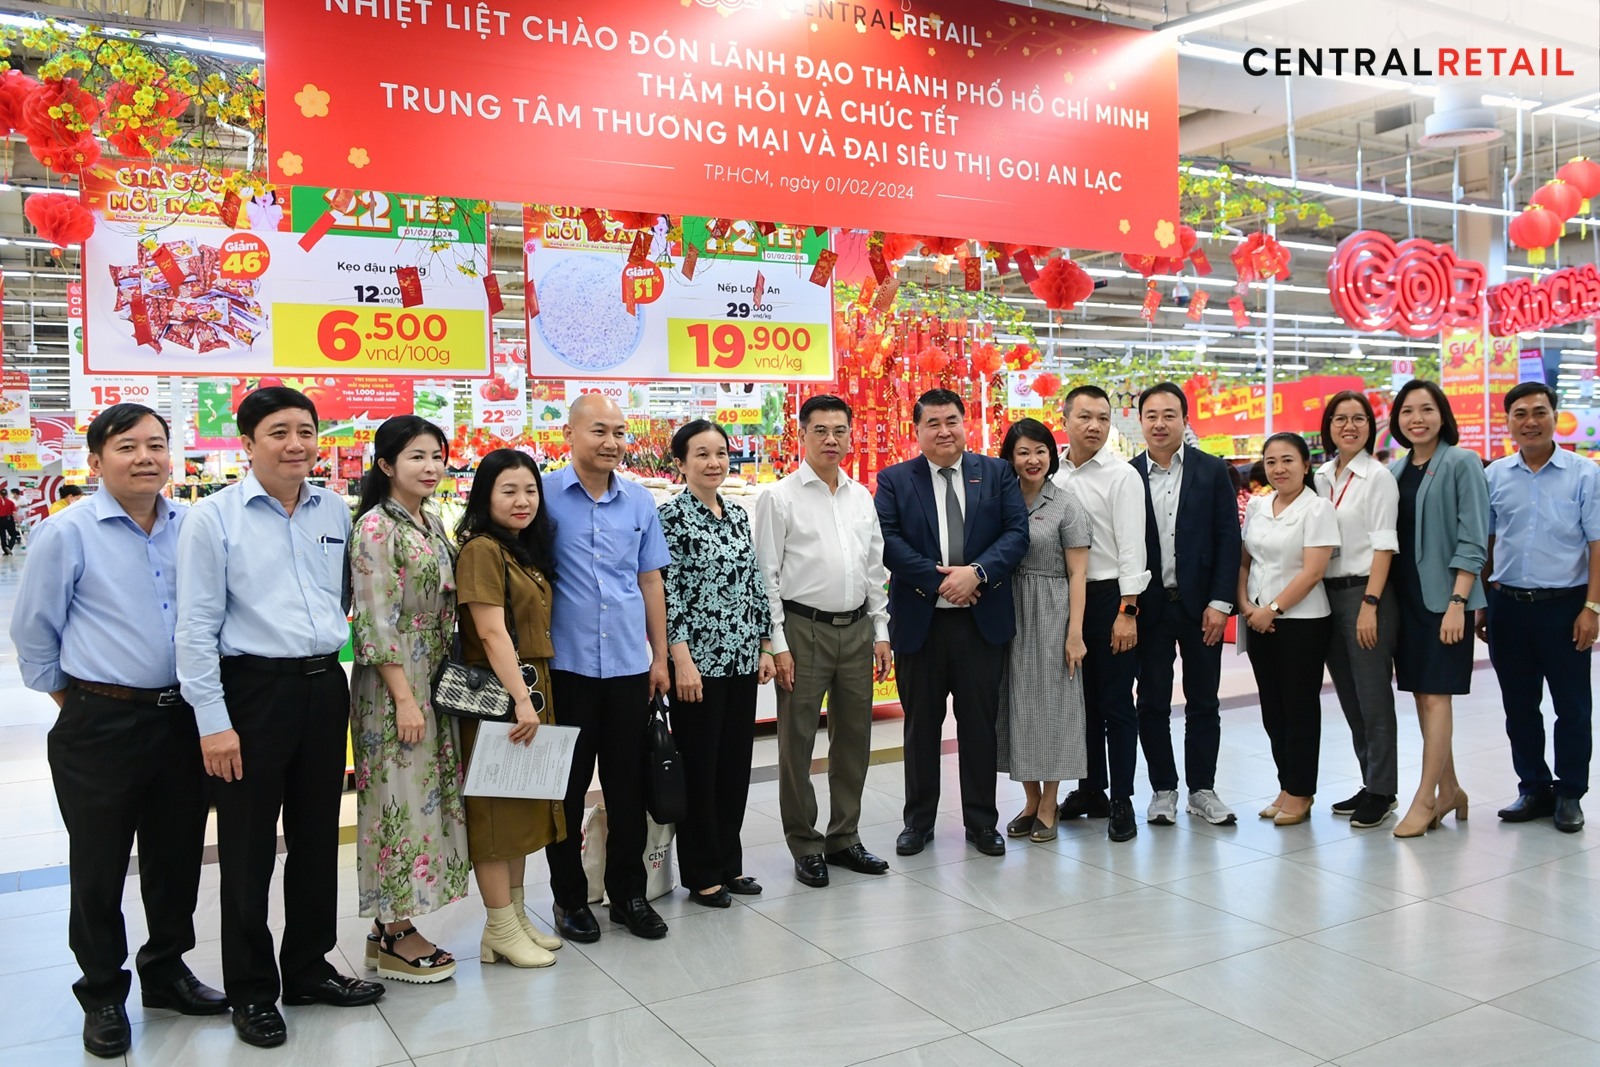 Lãnh đạo tập đoàn Central Retail Việt Nam vinh dự đón đoàn Lãnh đạo Thành phố Hồ Chí Minh tại GO! An Lạc